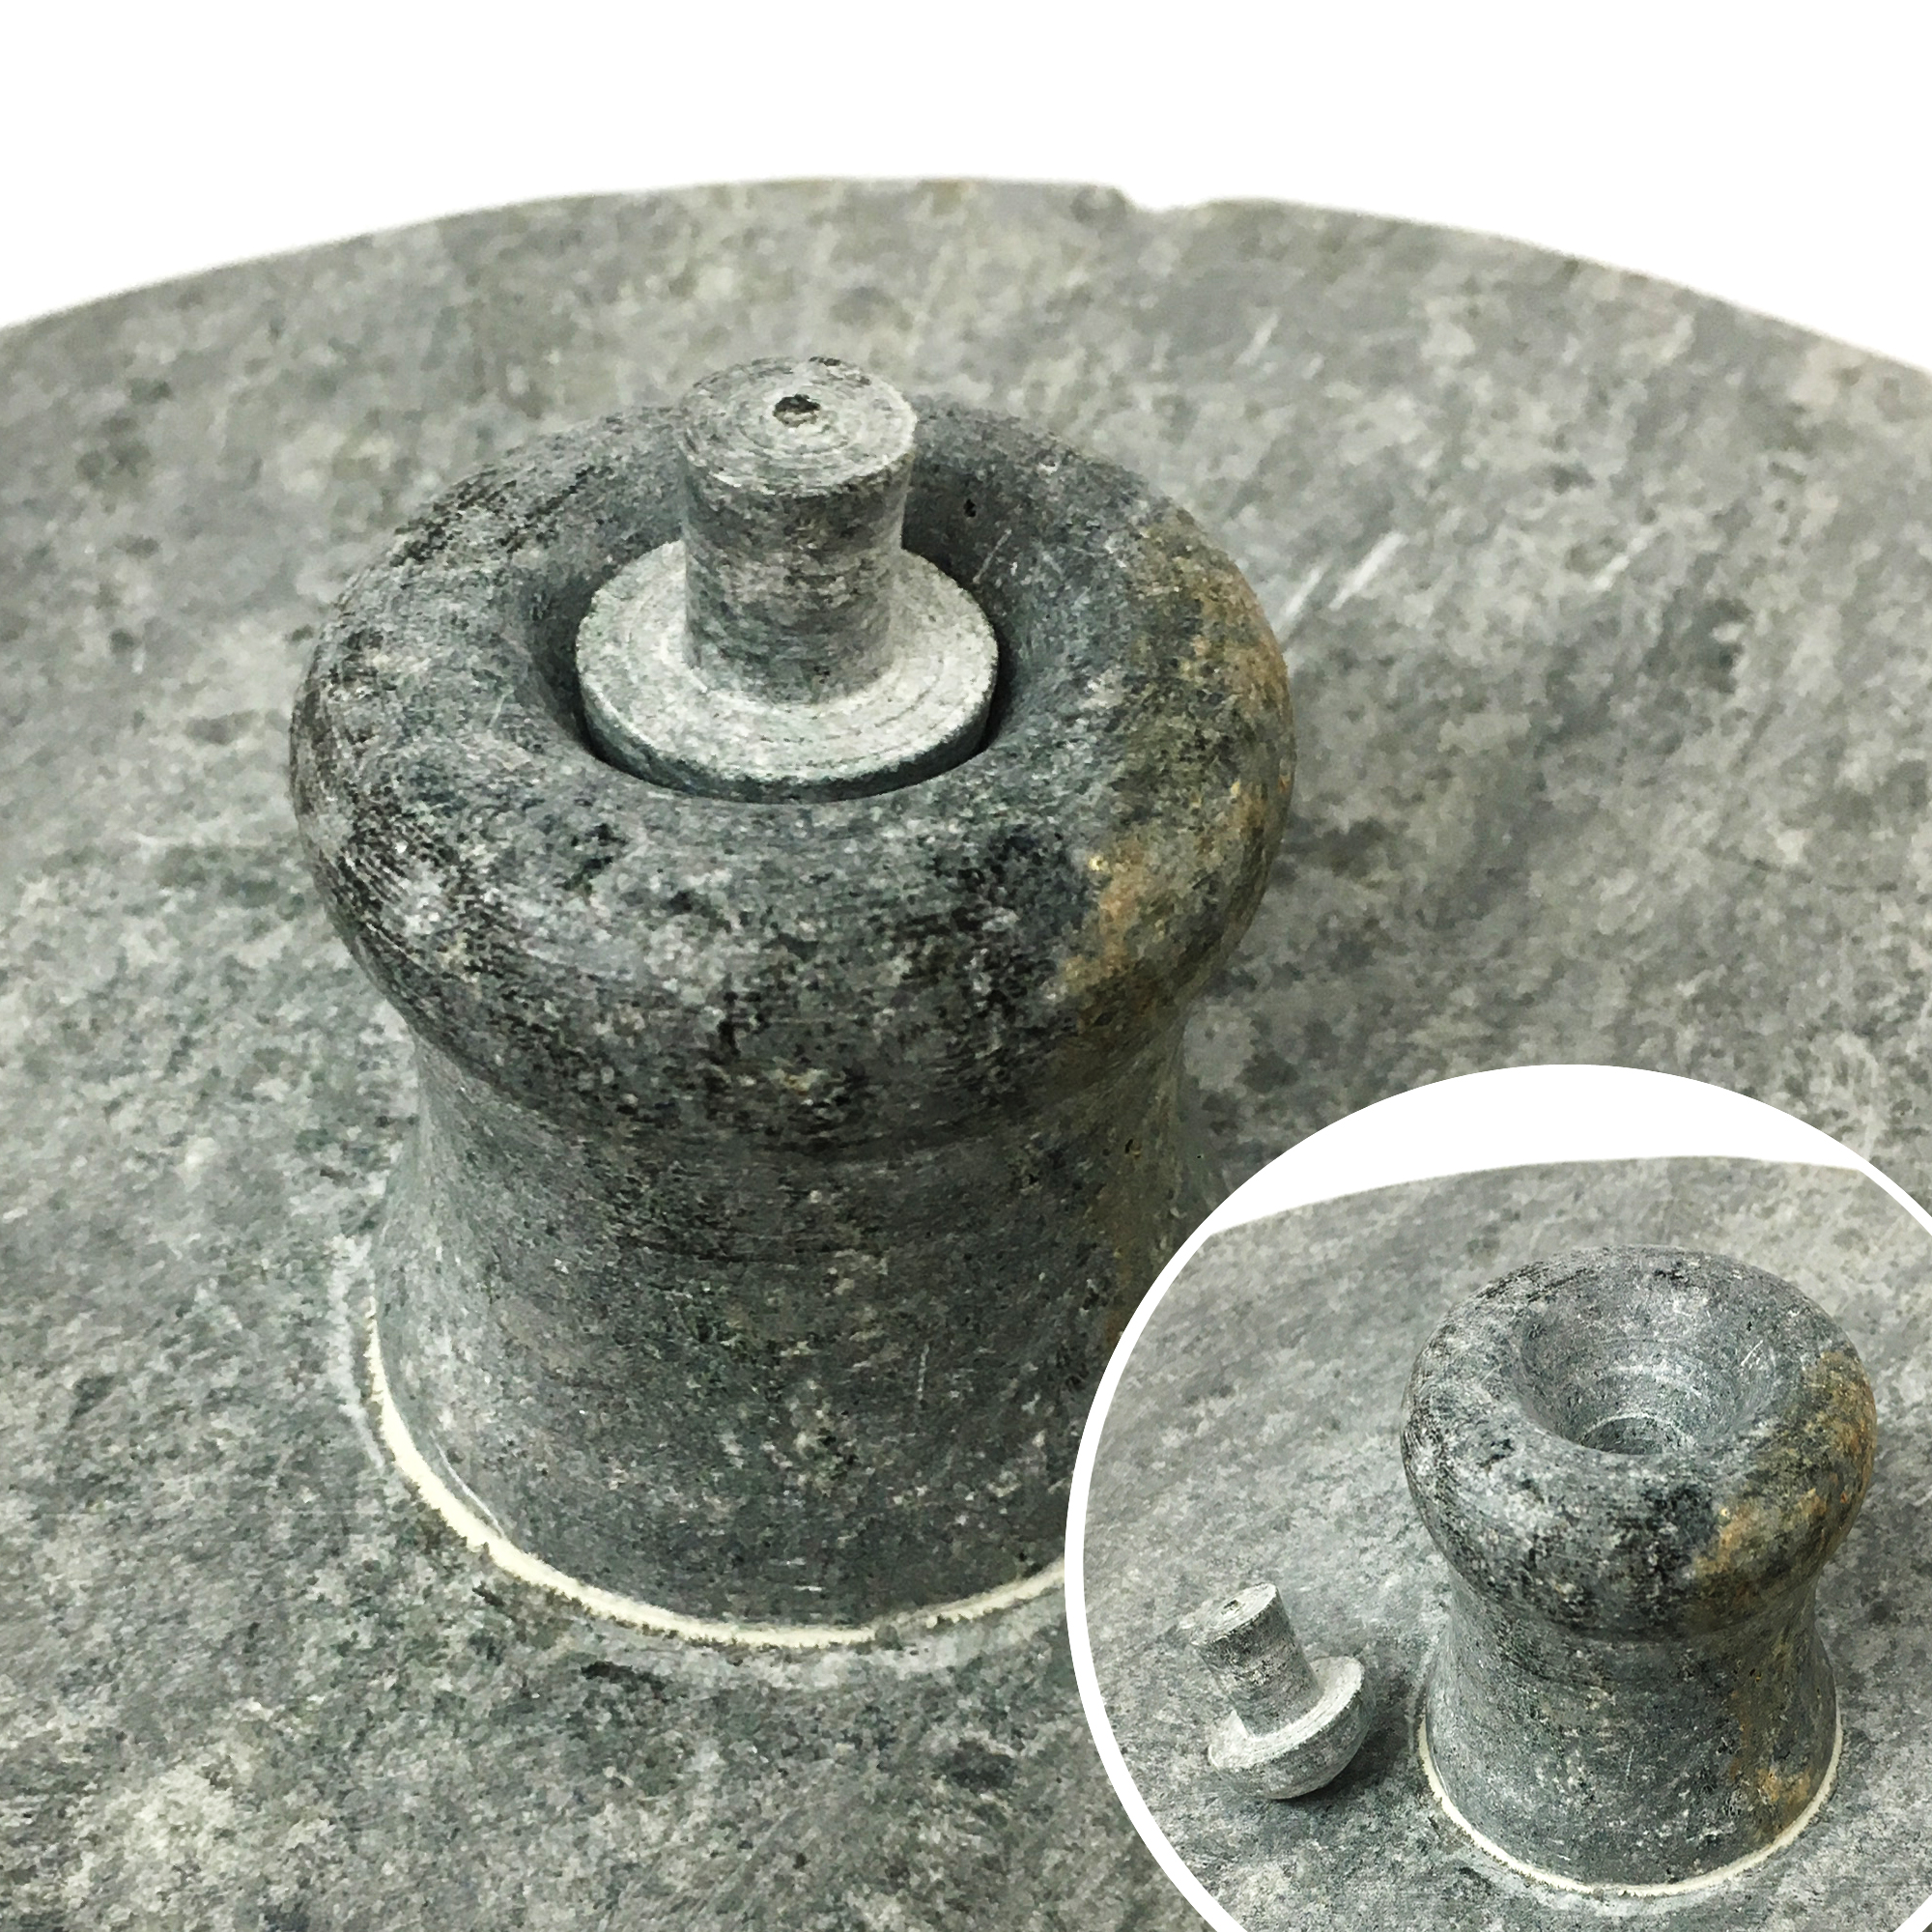 Brazilian Soapstone Semi-pressure Cooker, Panela de Pedra a